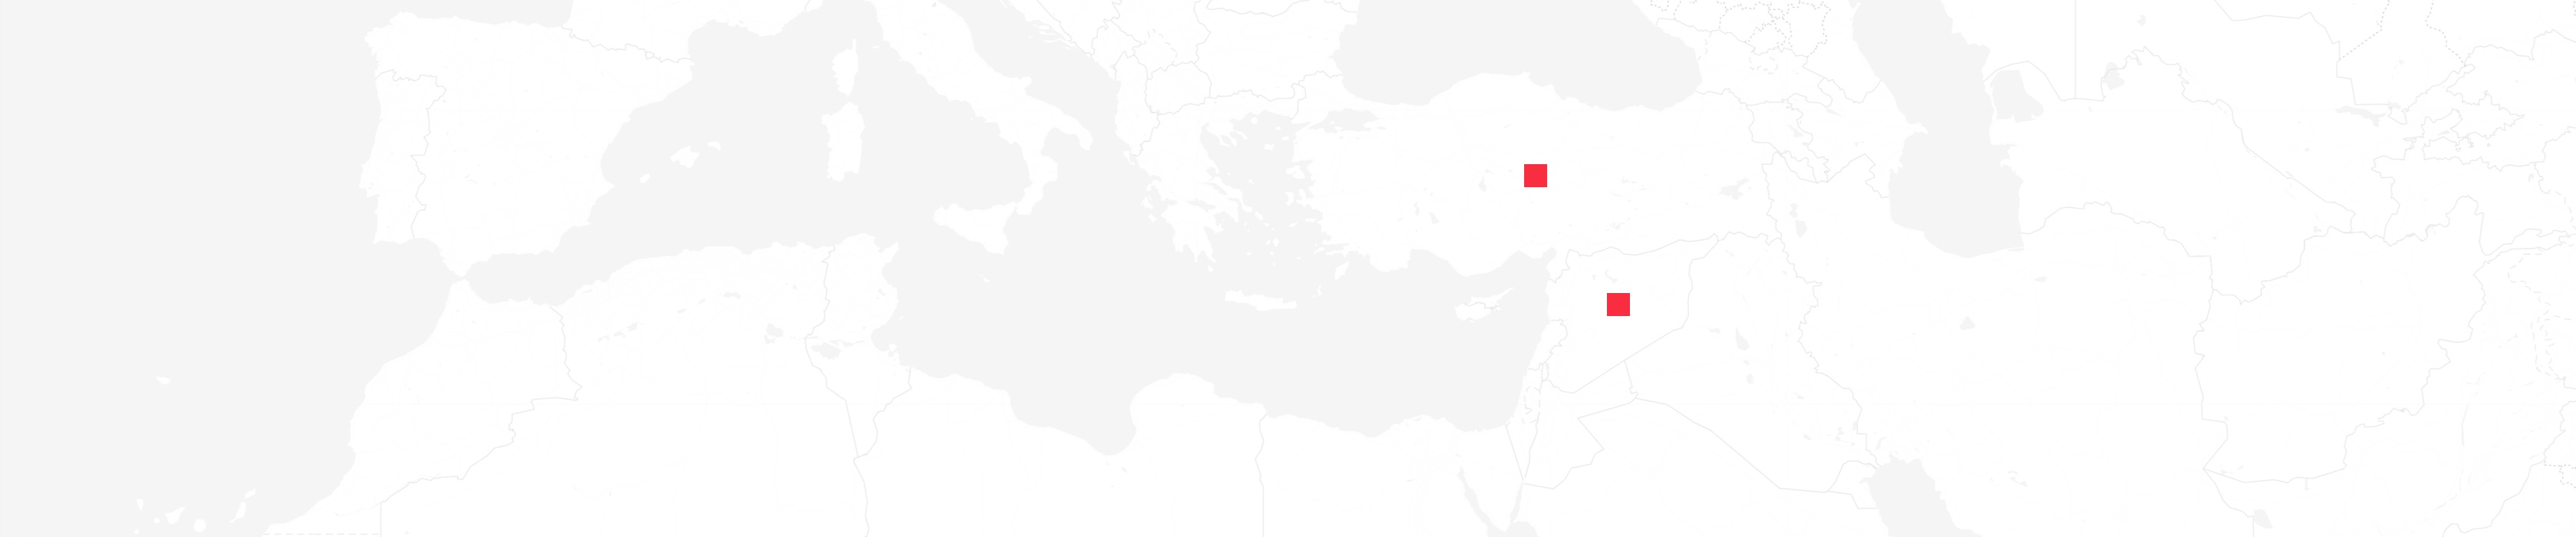 Mapa de Turquía y Siria